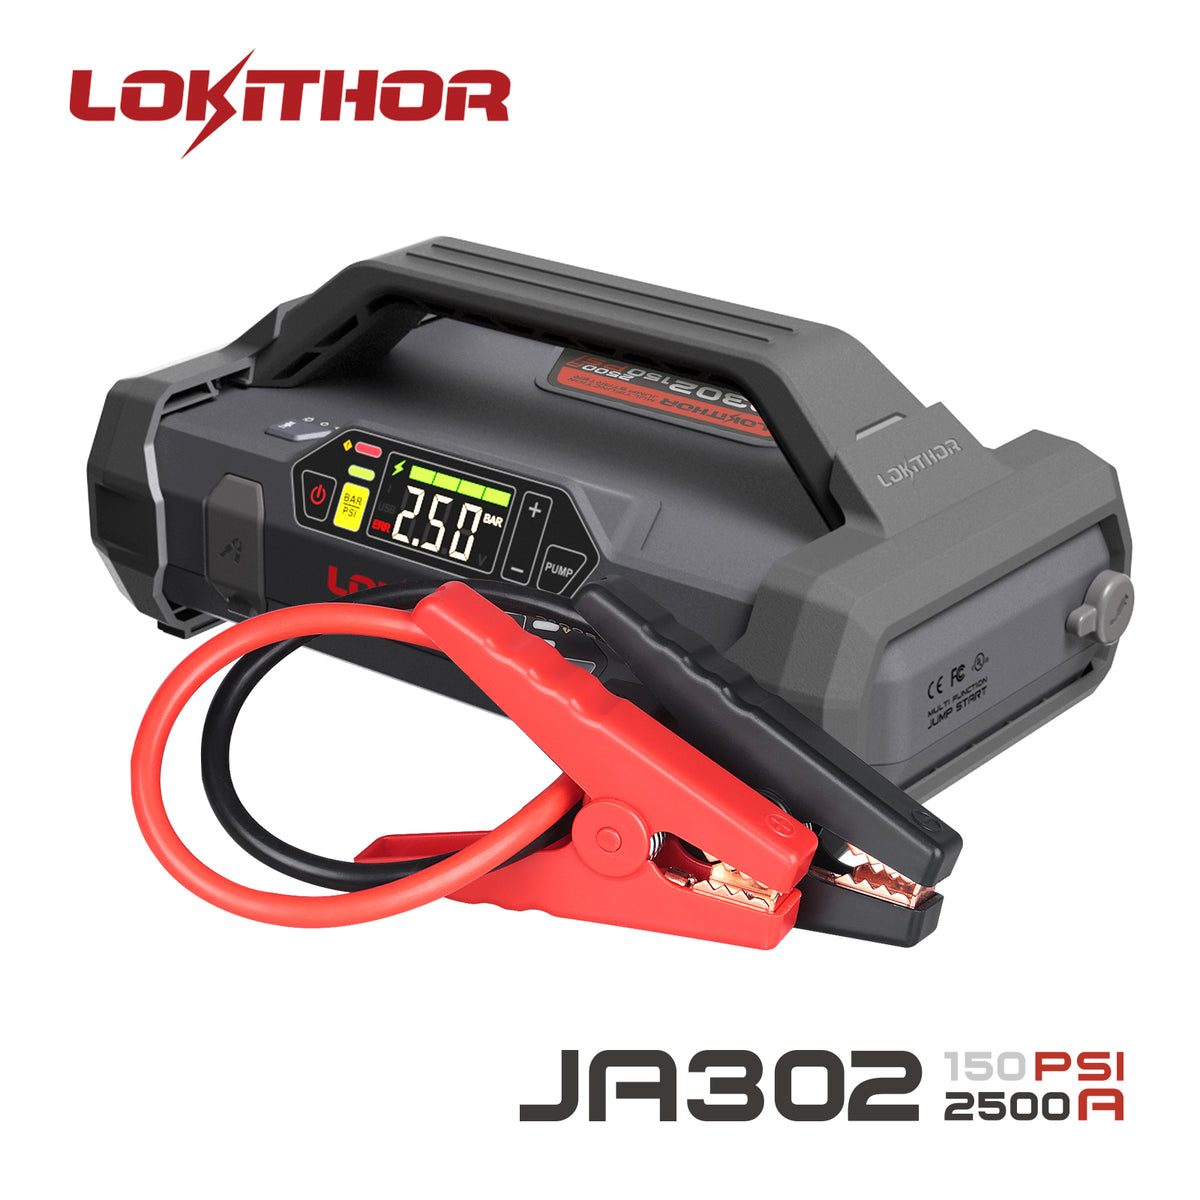 Lokithor J401 2500A 12V Powerbank und Starthilfe in einem